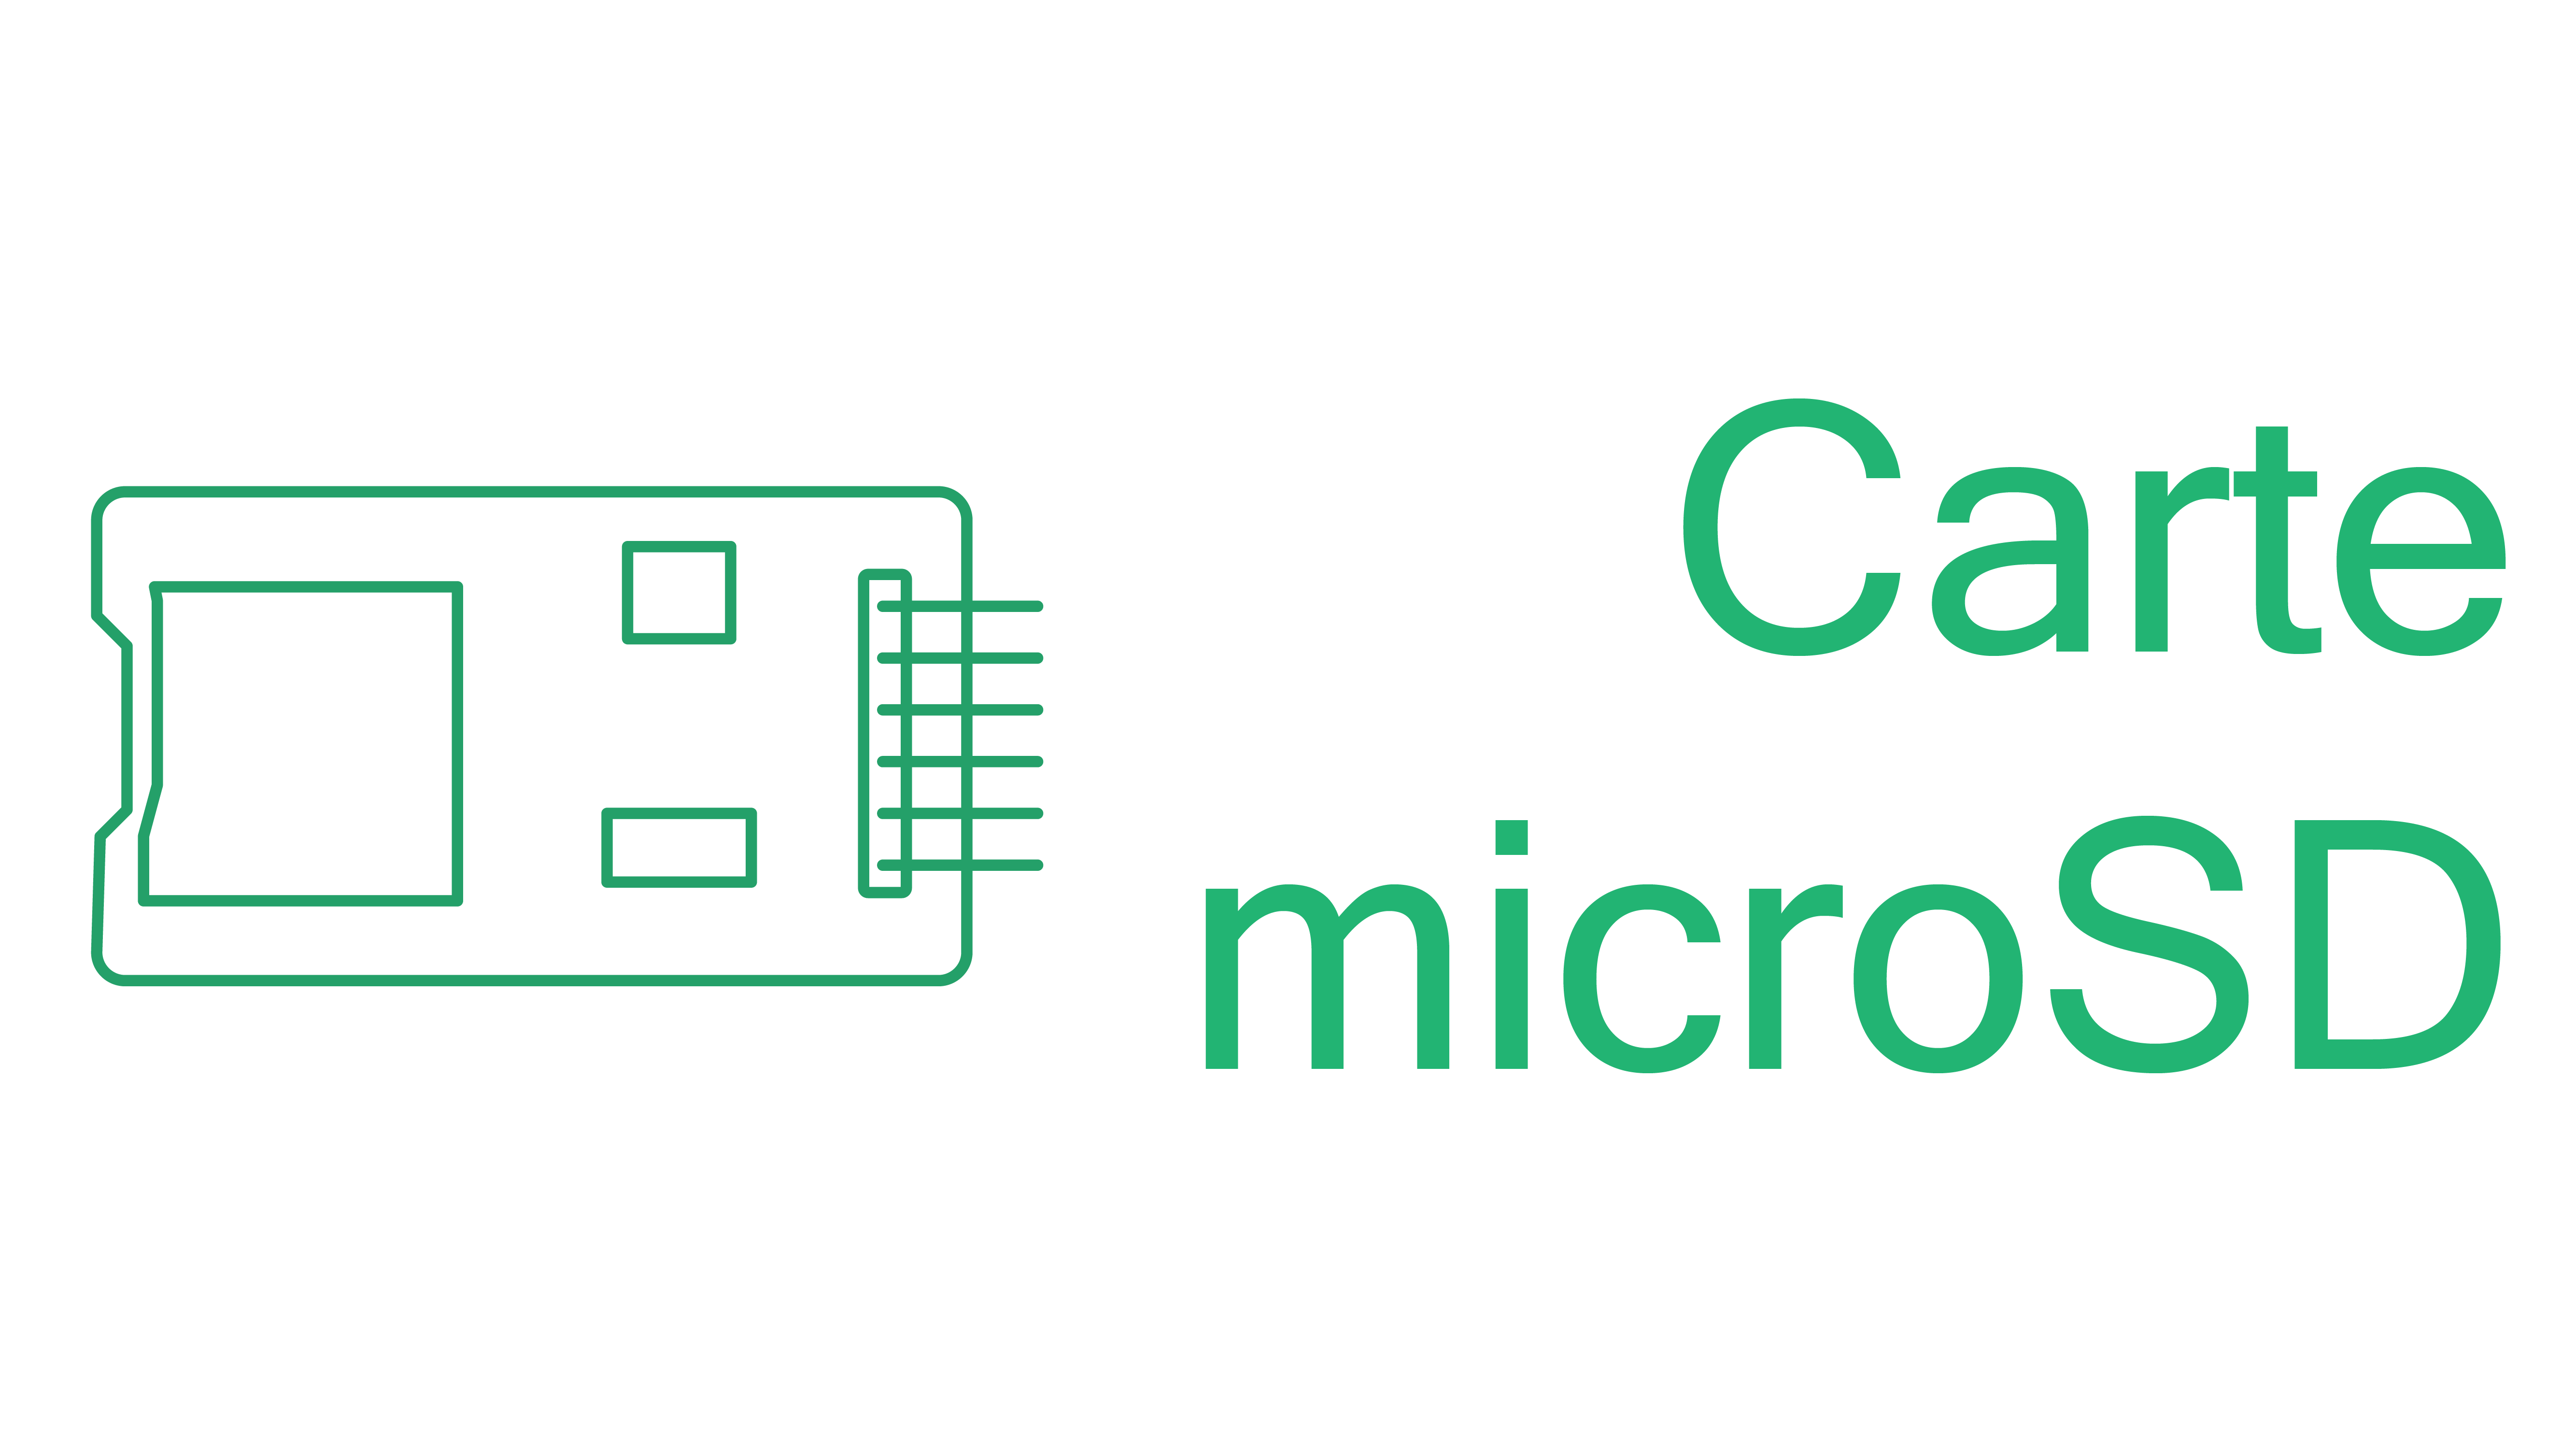 Enregistrer des données sur une carte microSD avec Arduino